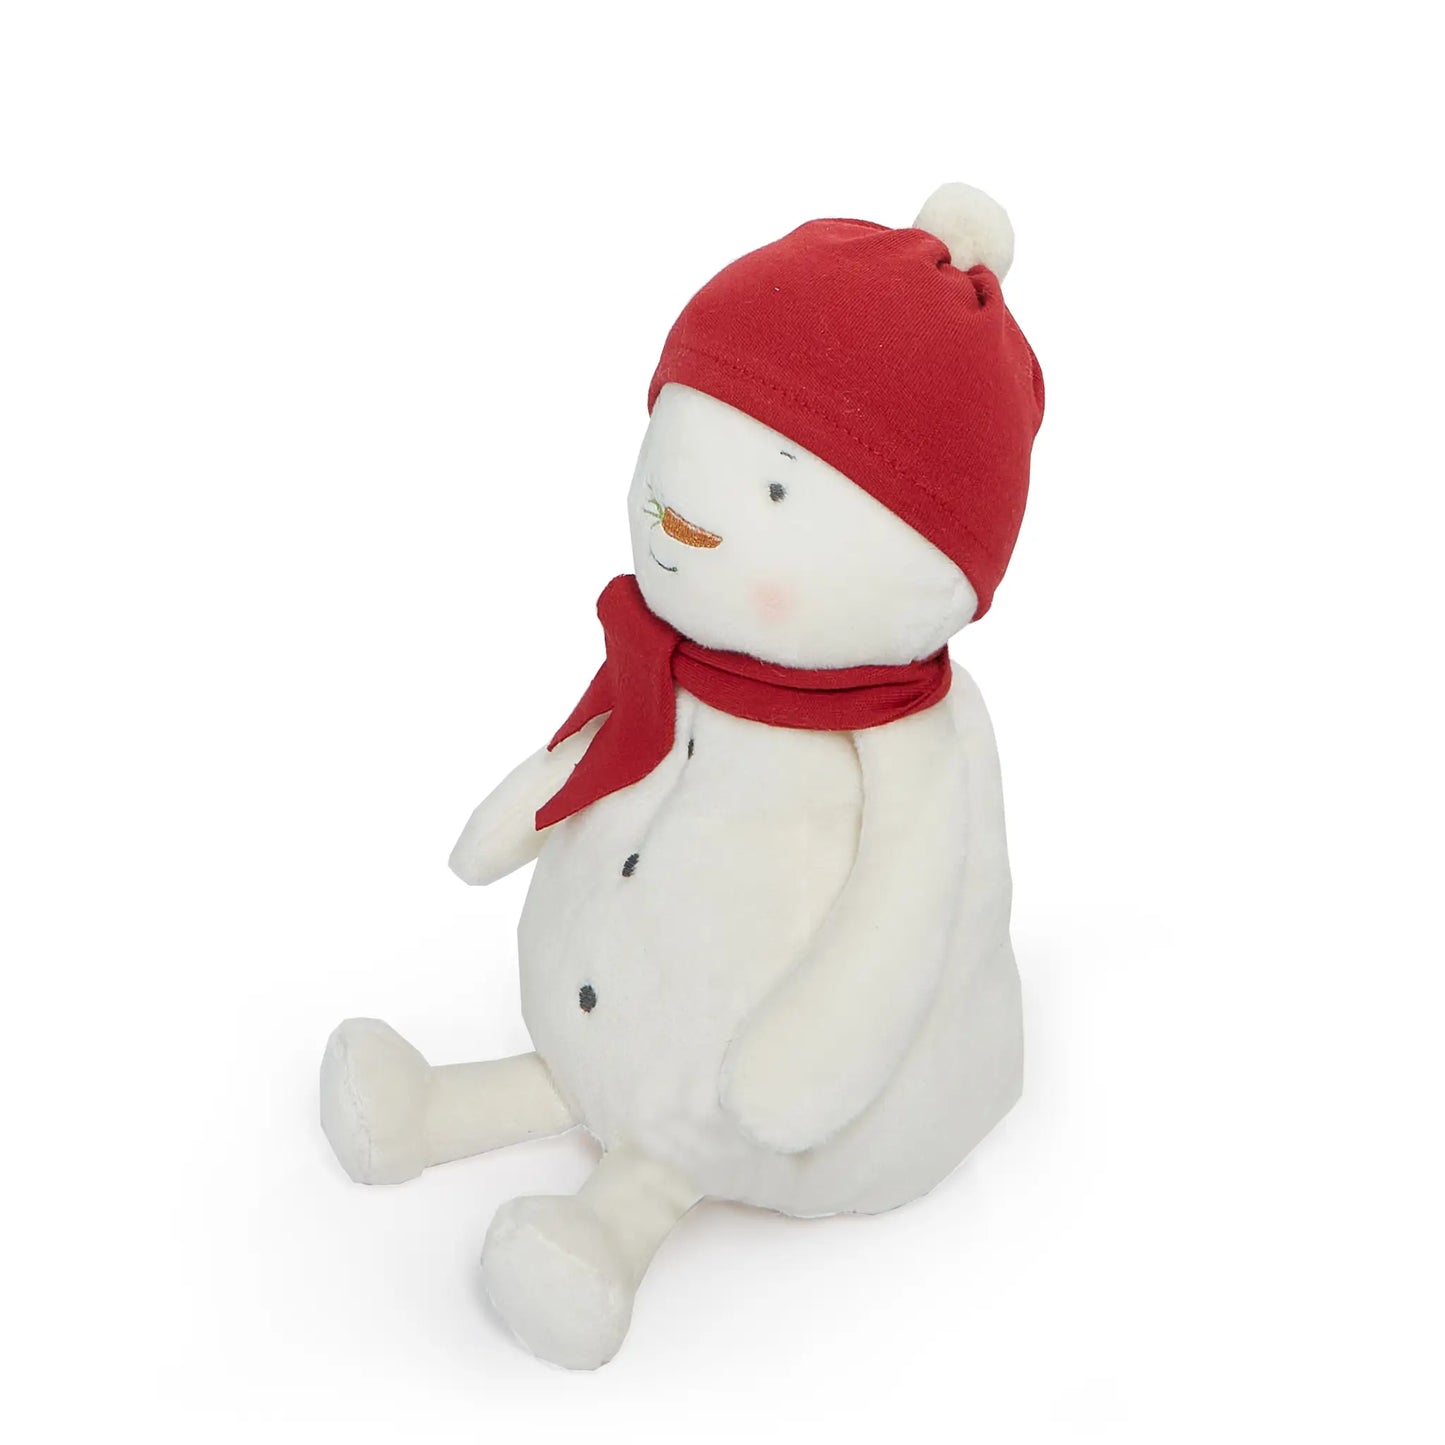 Marshmallow the Snowman